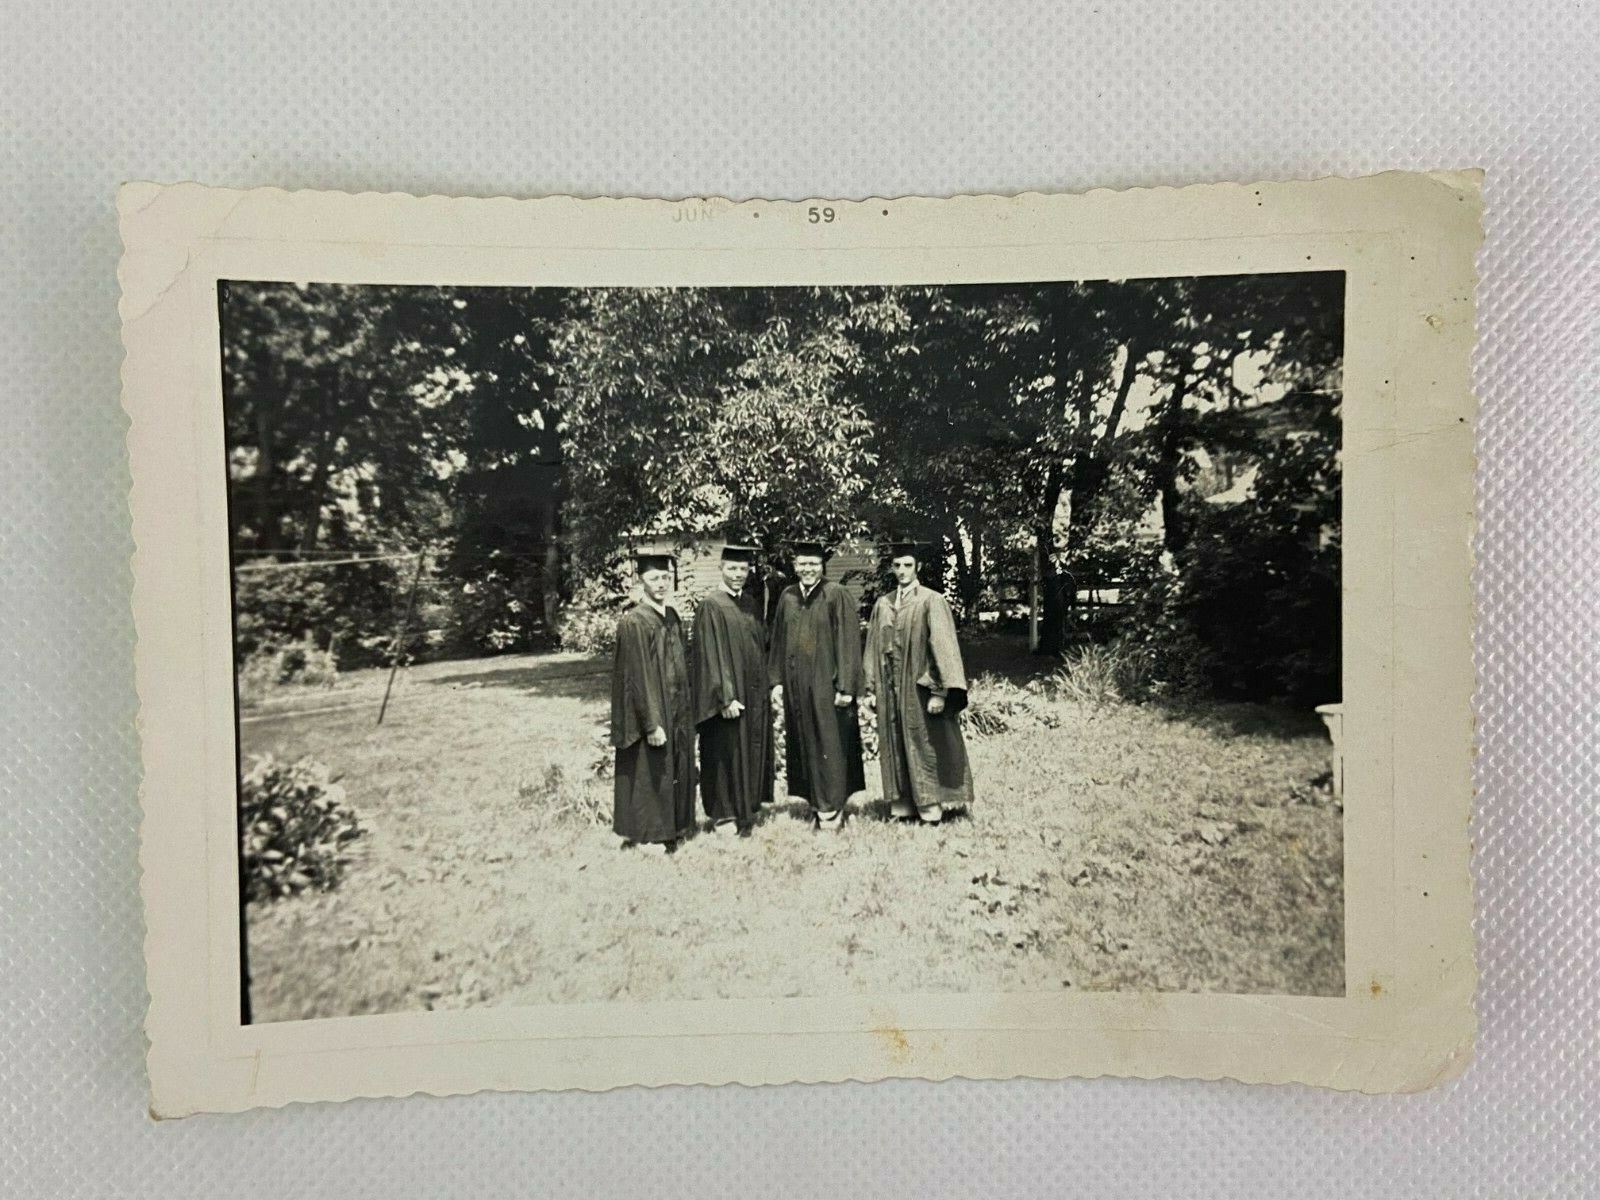 Men Graduation Cap & Gown Vintage B&W Photograph Snapshot 3.5 x 5